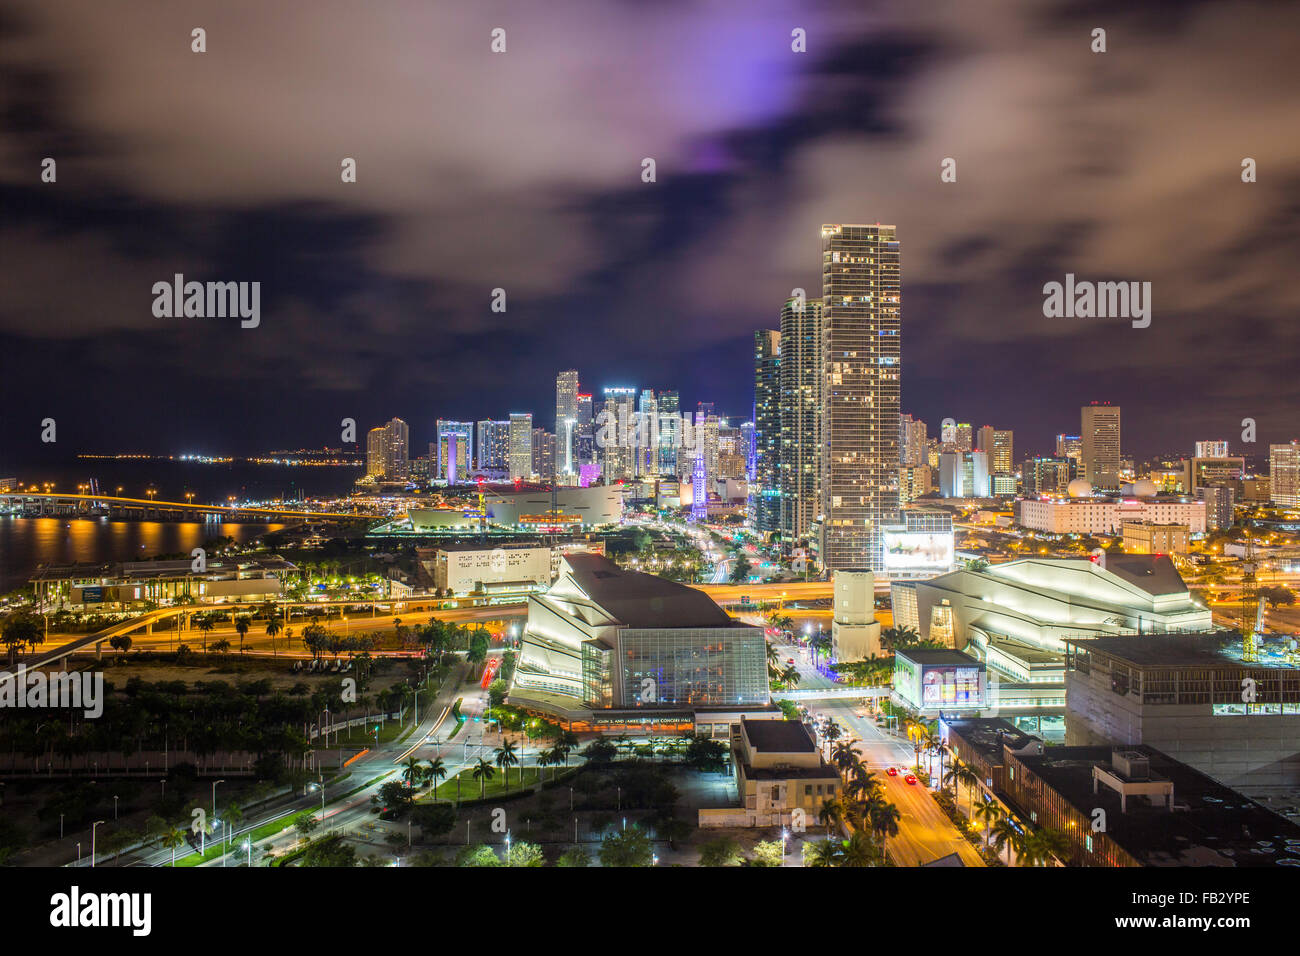 Ver elevados a lo largo de Biscayne Boulevard y del horizonte de Miami, Florida, USA. Foto de stock